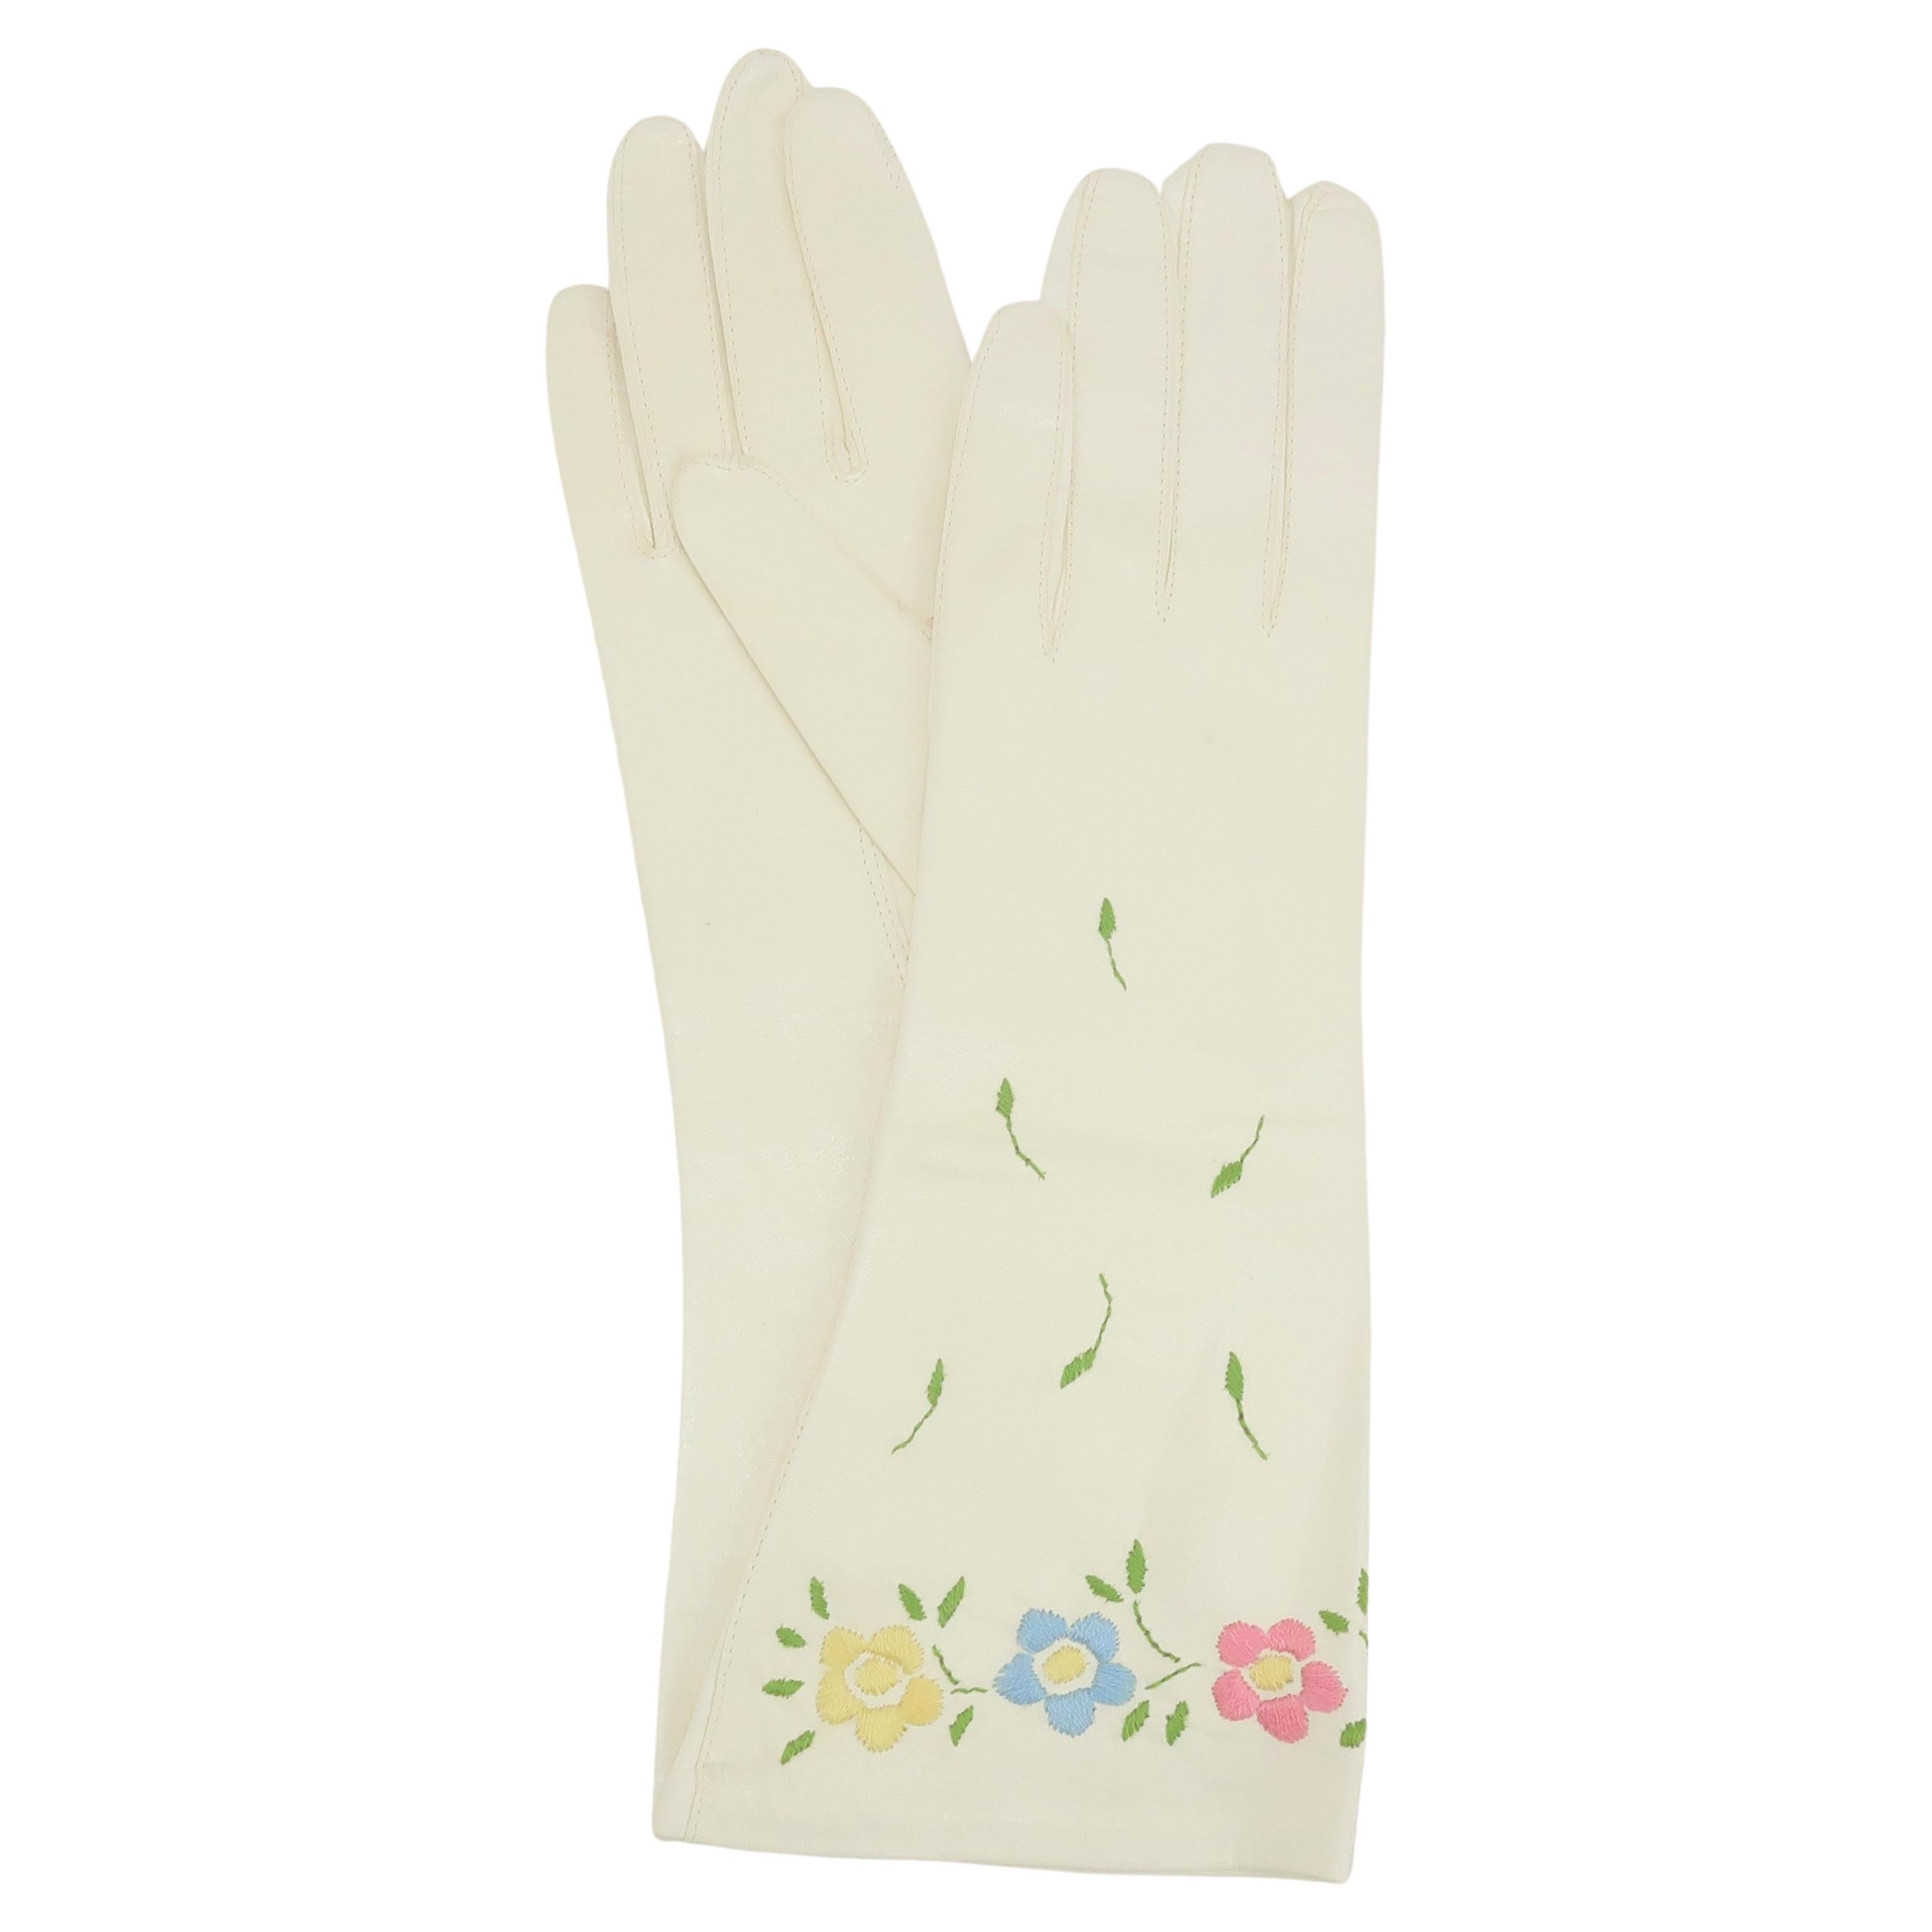 Vintage Gloves 1950s Leather Gloves Dents Gloves Size 7 Gloves White Leather Gloves Medium Long Gloves Bridal Gloves 1960s Gloves Accessories Gloves & Mittens Evening & Formal Gloves 